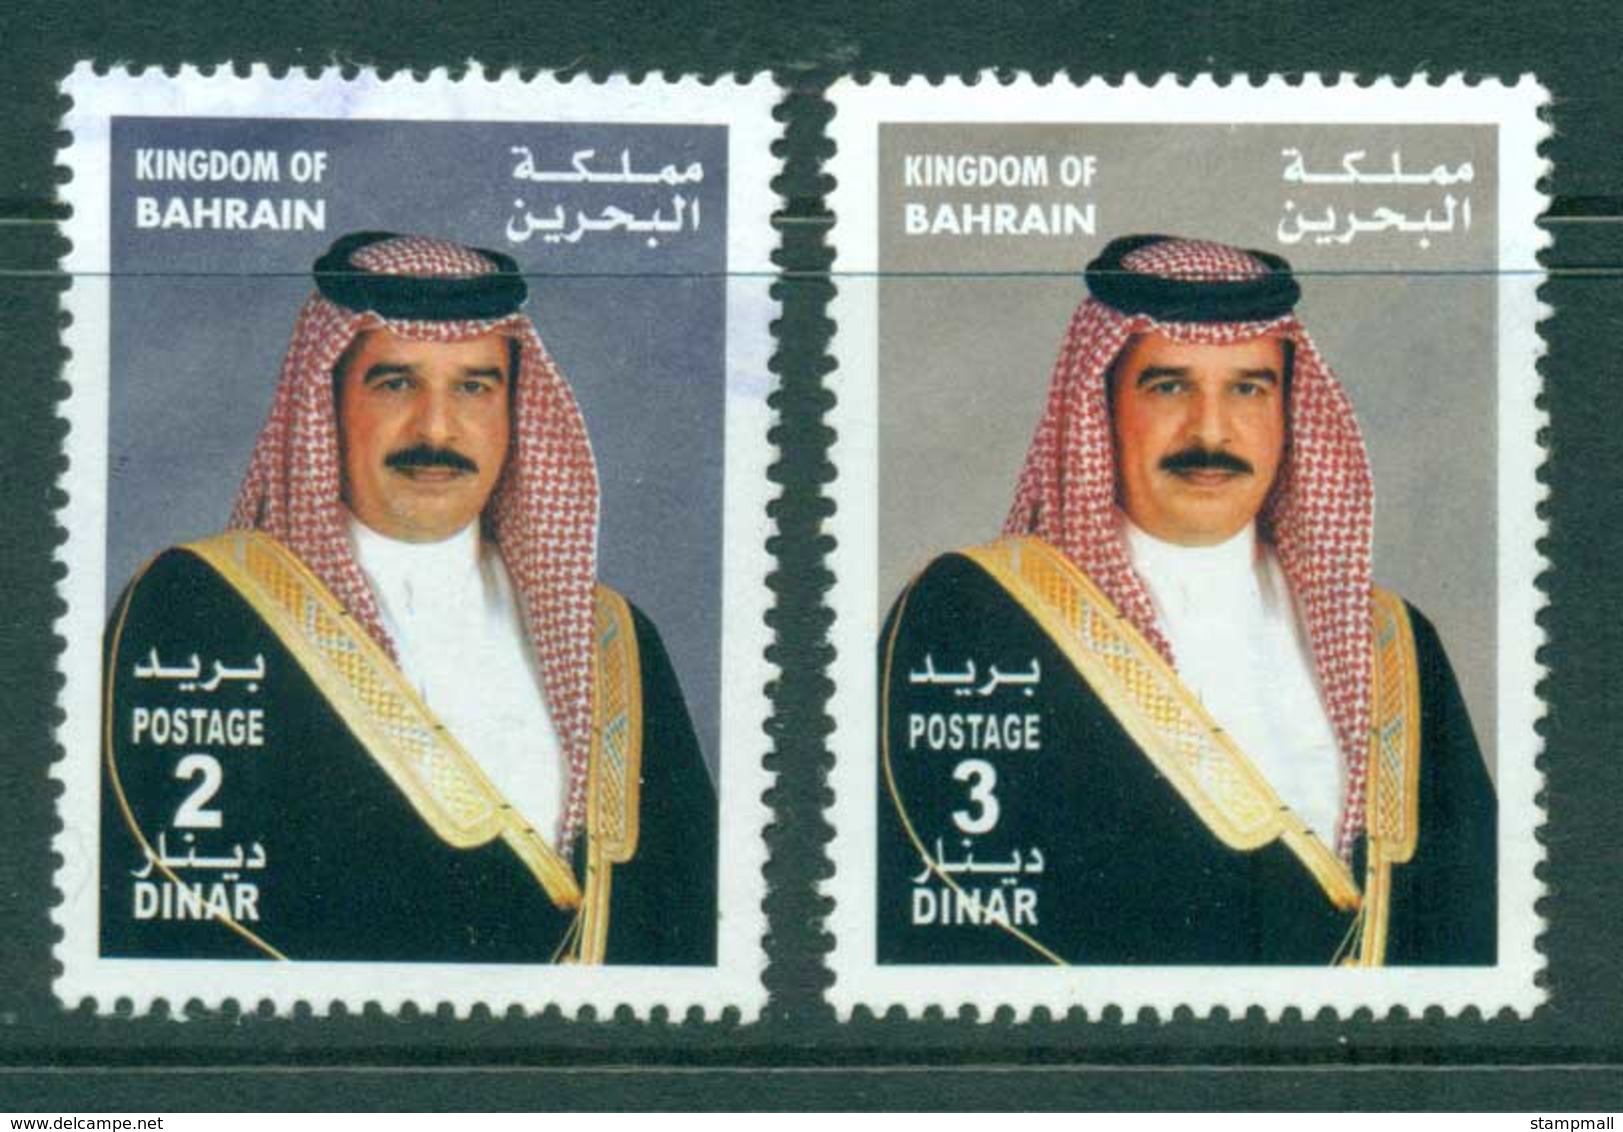 Bahrain 2002 2,3d Emir Hamad FU Lot26461 - Bahrain (1965-...)